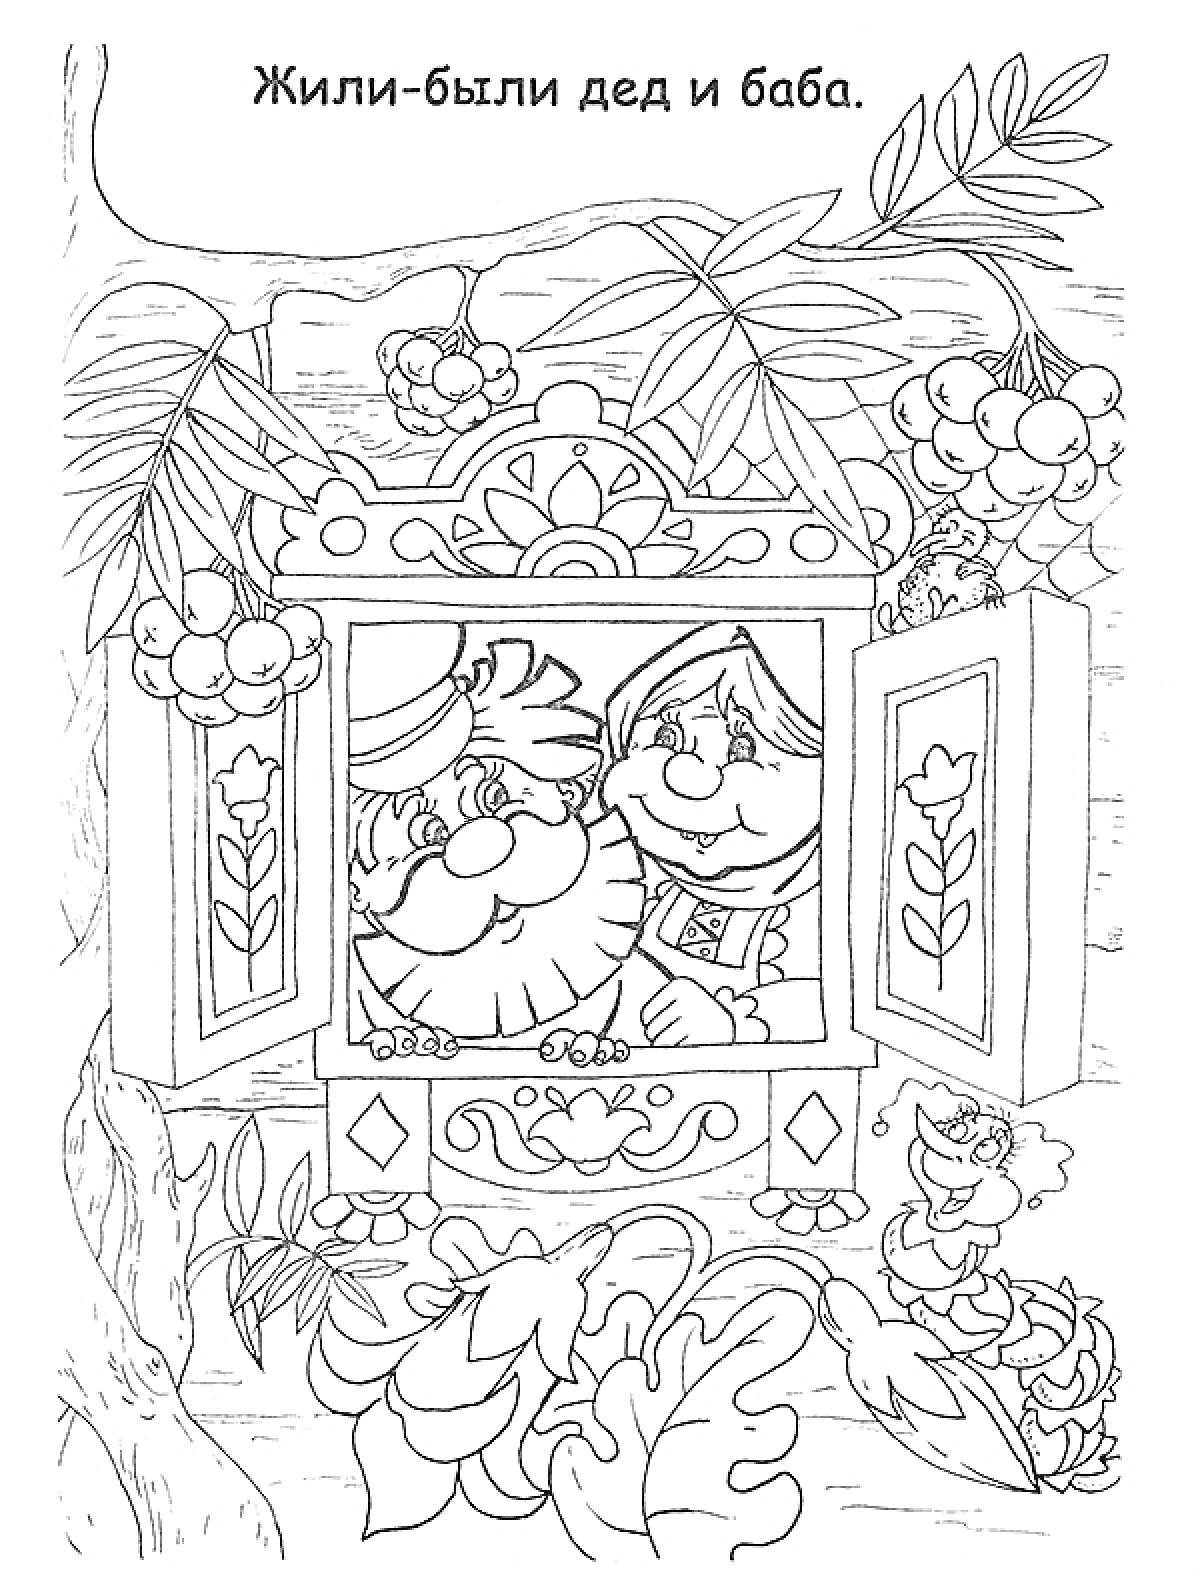 Раскраска Дед и баба в окошке, листья и ягоды вокруг, надпись наверху 